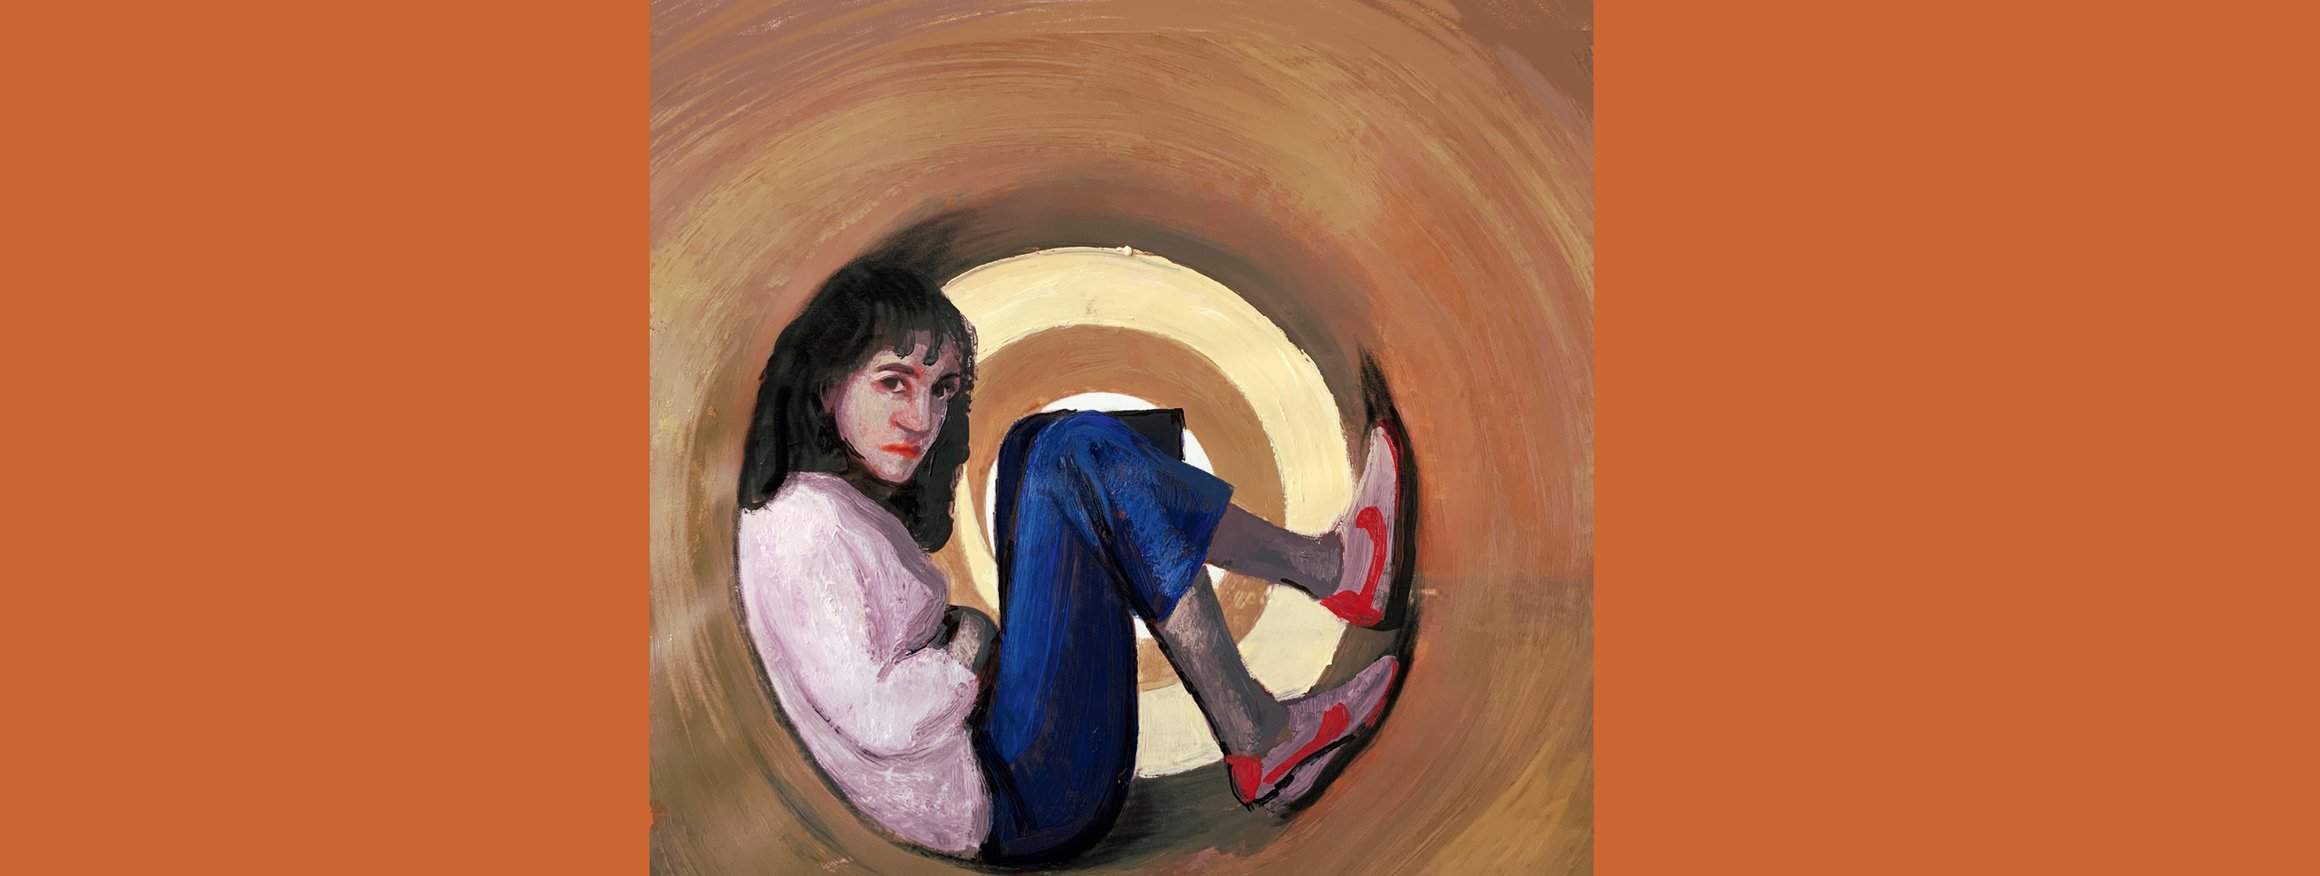 Die Illustration zeigt eine junge Frau, die lässig in einer Röhre sitzt 